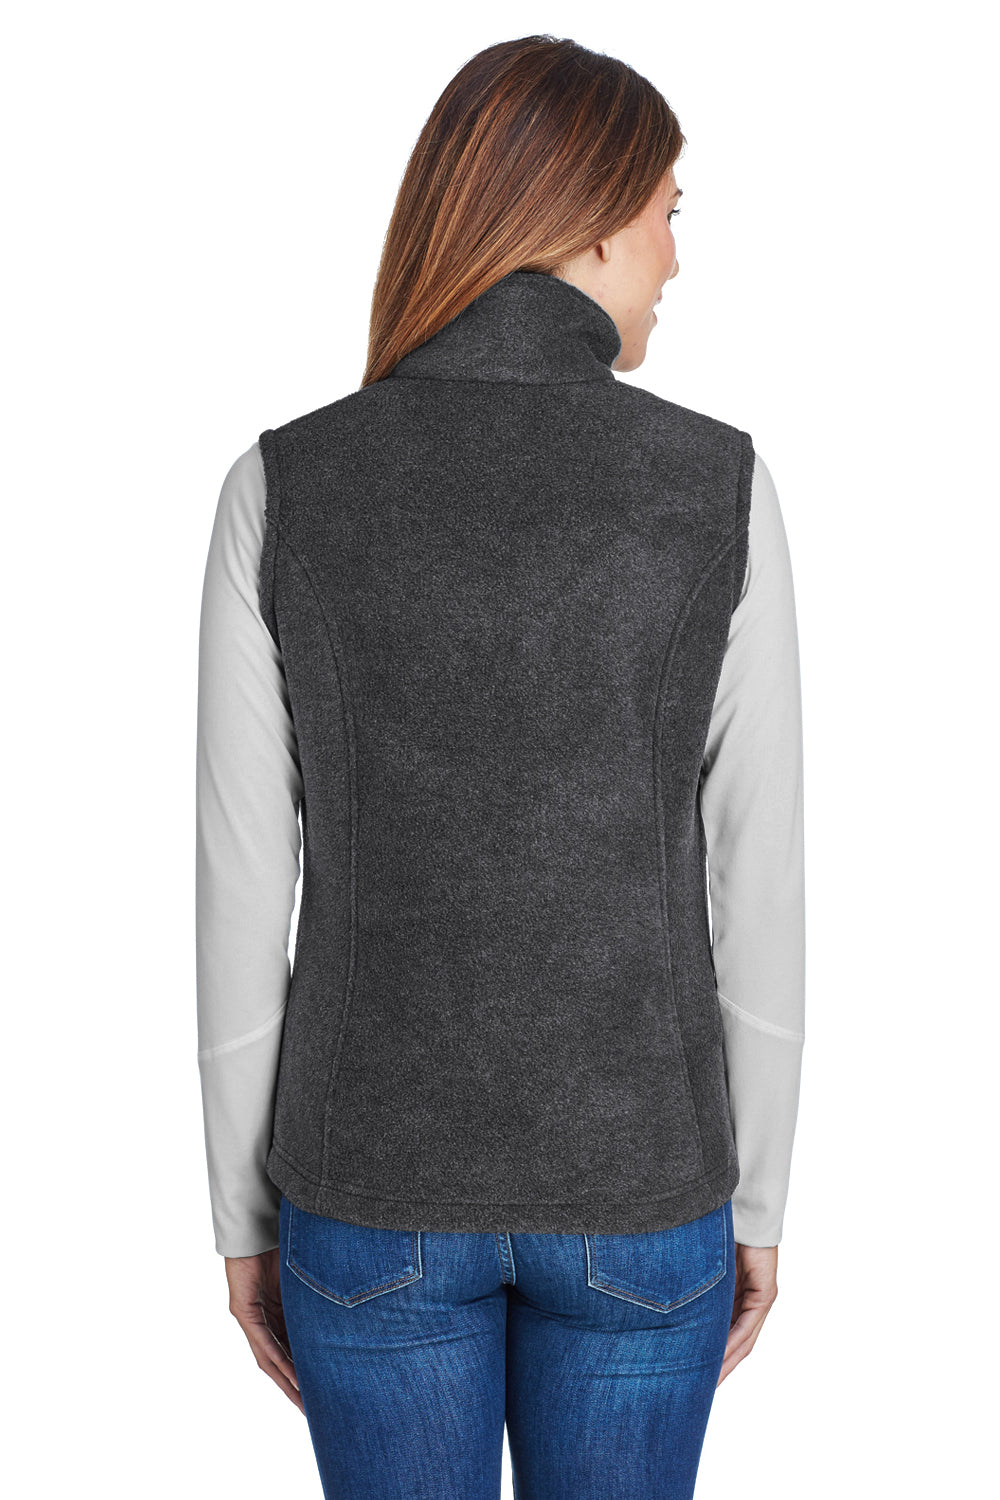 Columbia C1023 Womens Benton Springs Full Zip Fleece Vest Charcoal Grey Back